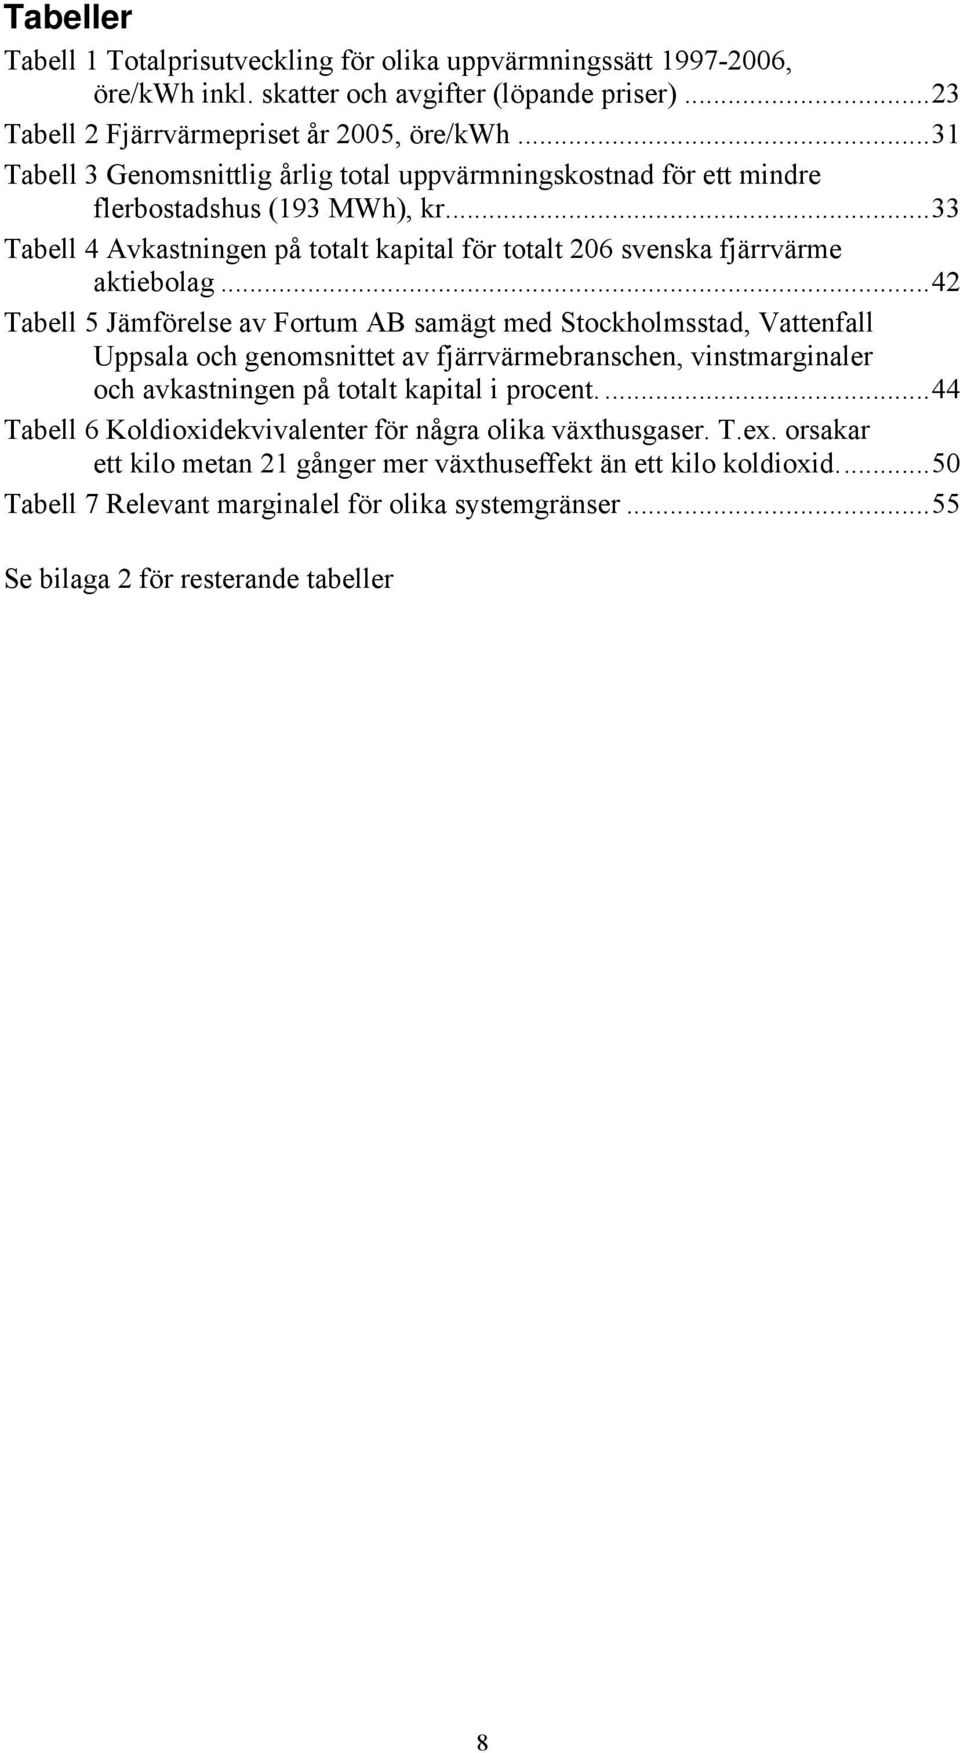 ..42 Tabell 5 Jämförelse av Fortum AB samägt med Stockholmsstad, Vattenfall Uppsala och genomsnittet av fjärrvärmebranschen, vinstmarginaler och avkastningen på totalt kapital i procent.